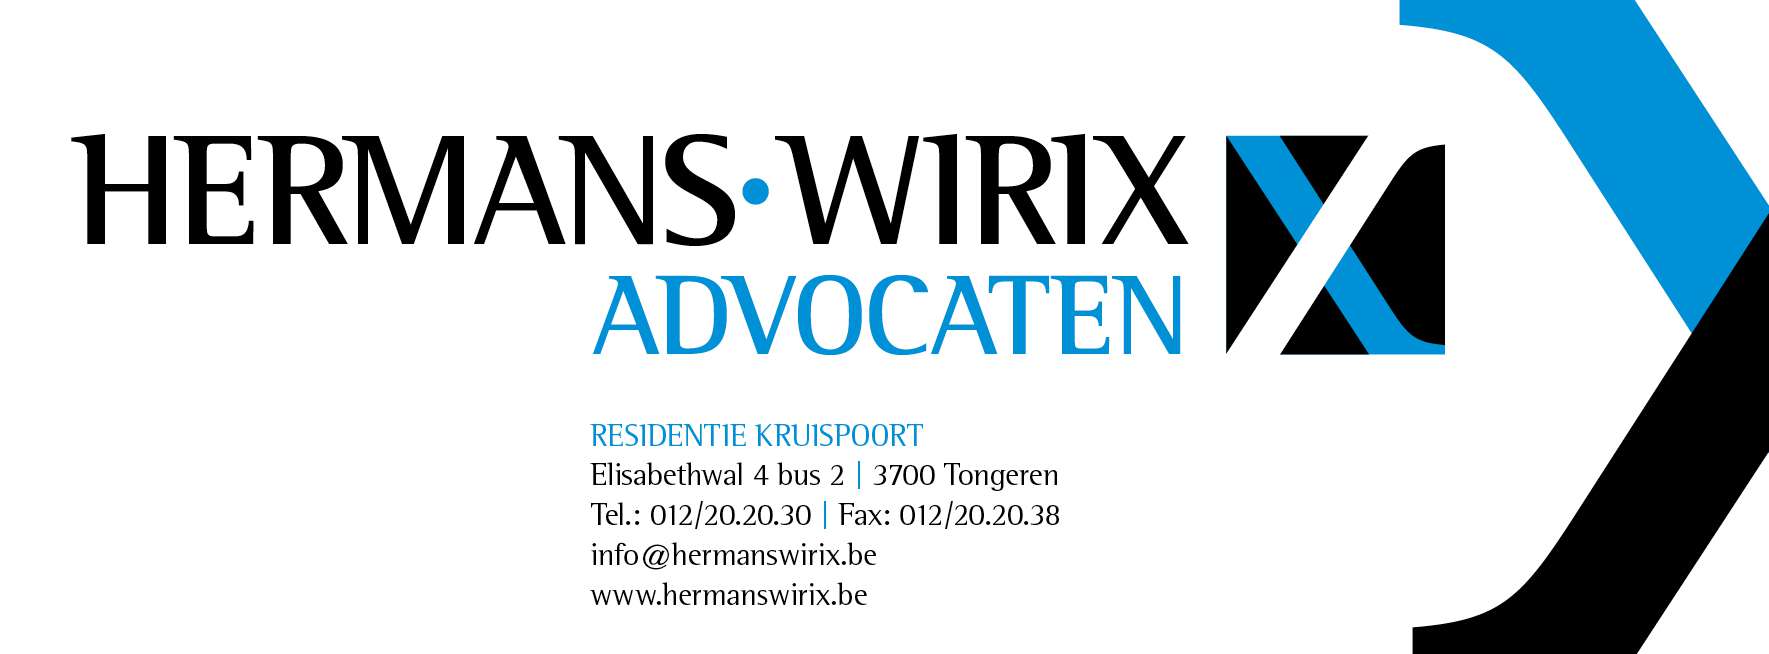 advocaten Herderen Hermans-Wirix advocaten